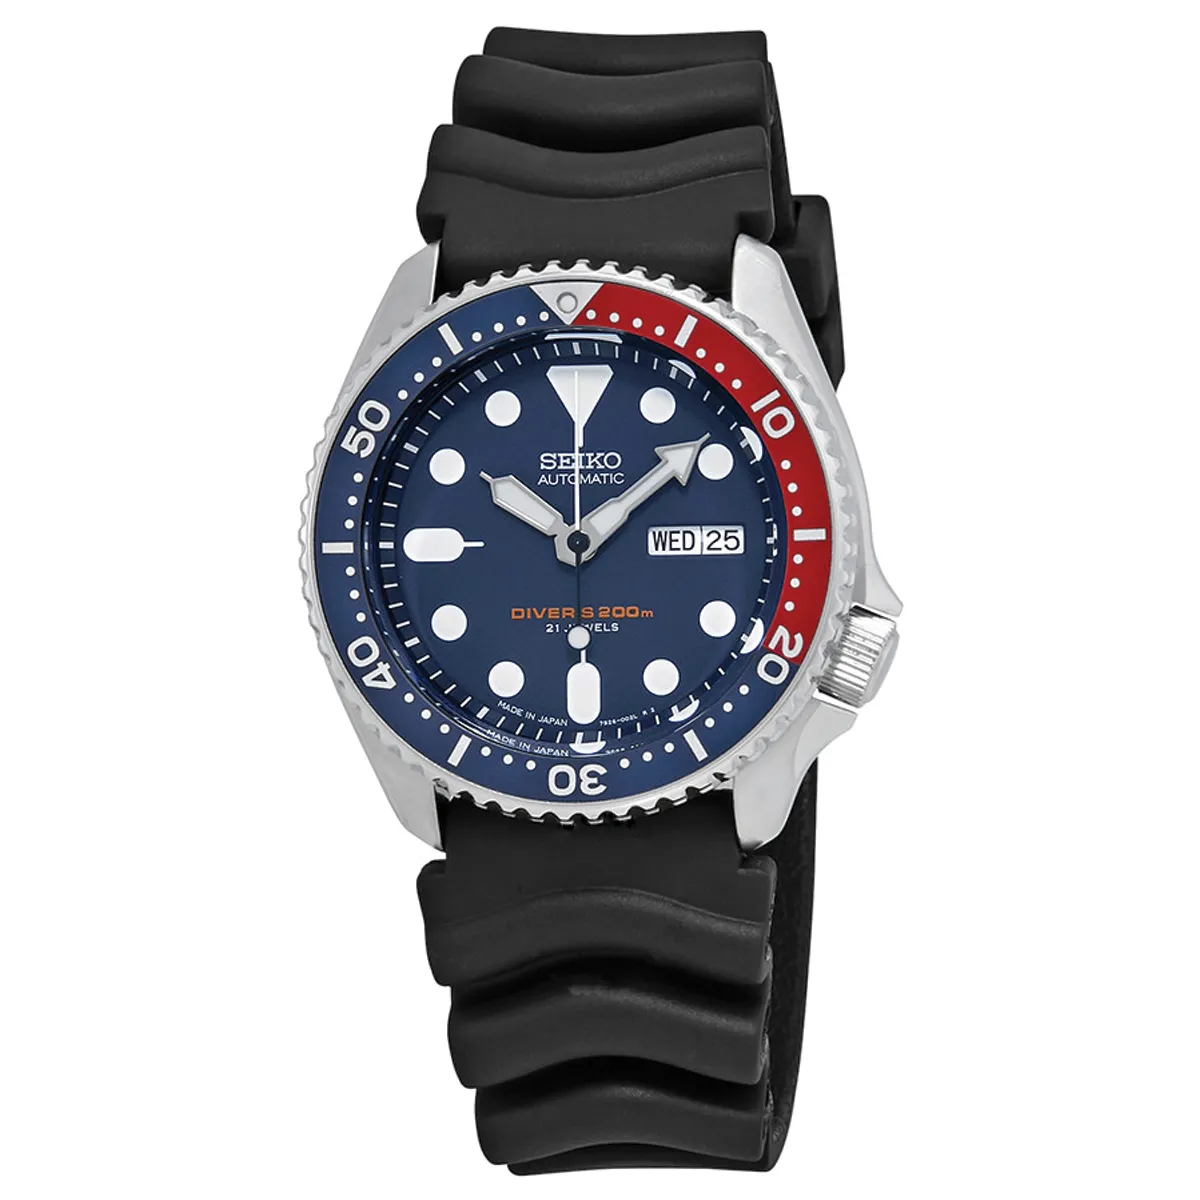 Đồng hồ Seiko Prospex Diver Automatic SKX009J1 mặt số màu xanh. Dây đeo bằng cao su. Thân vỏ bằng thép.